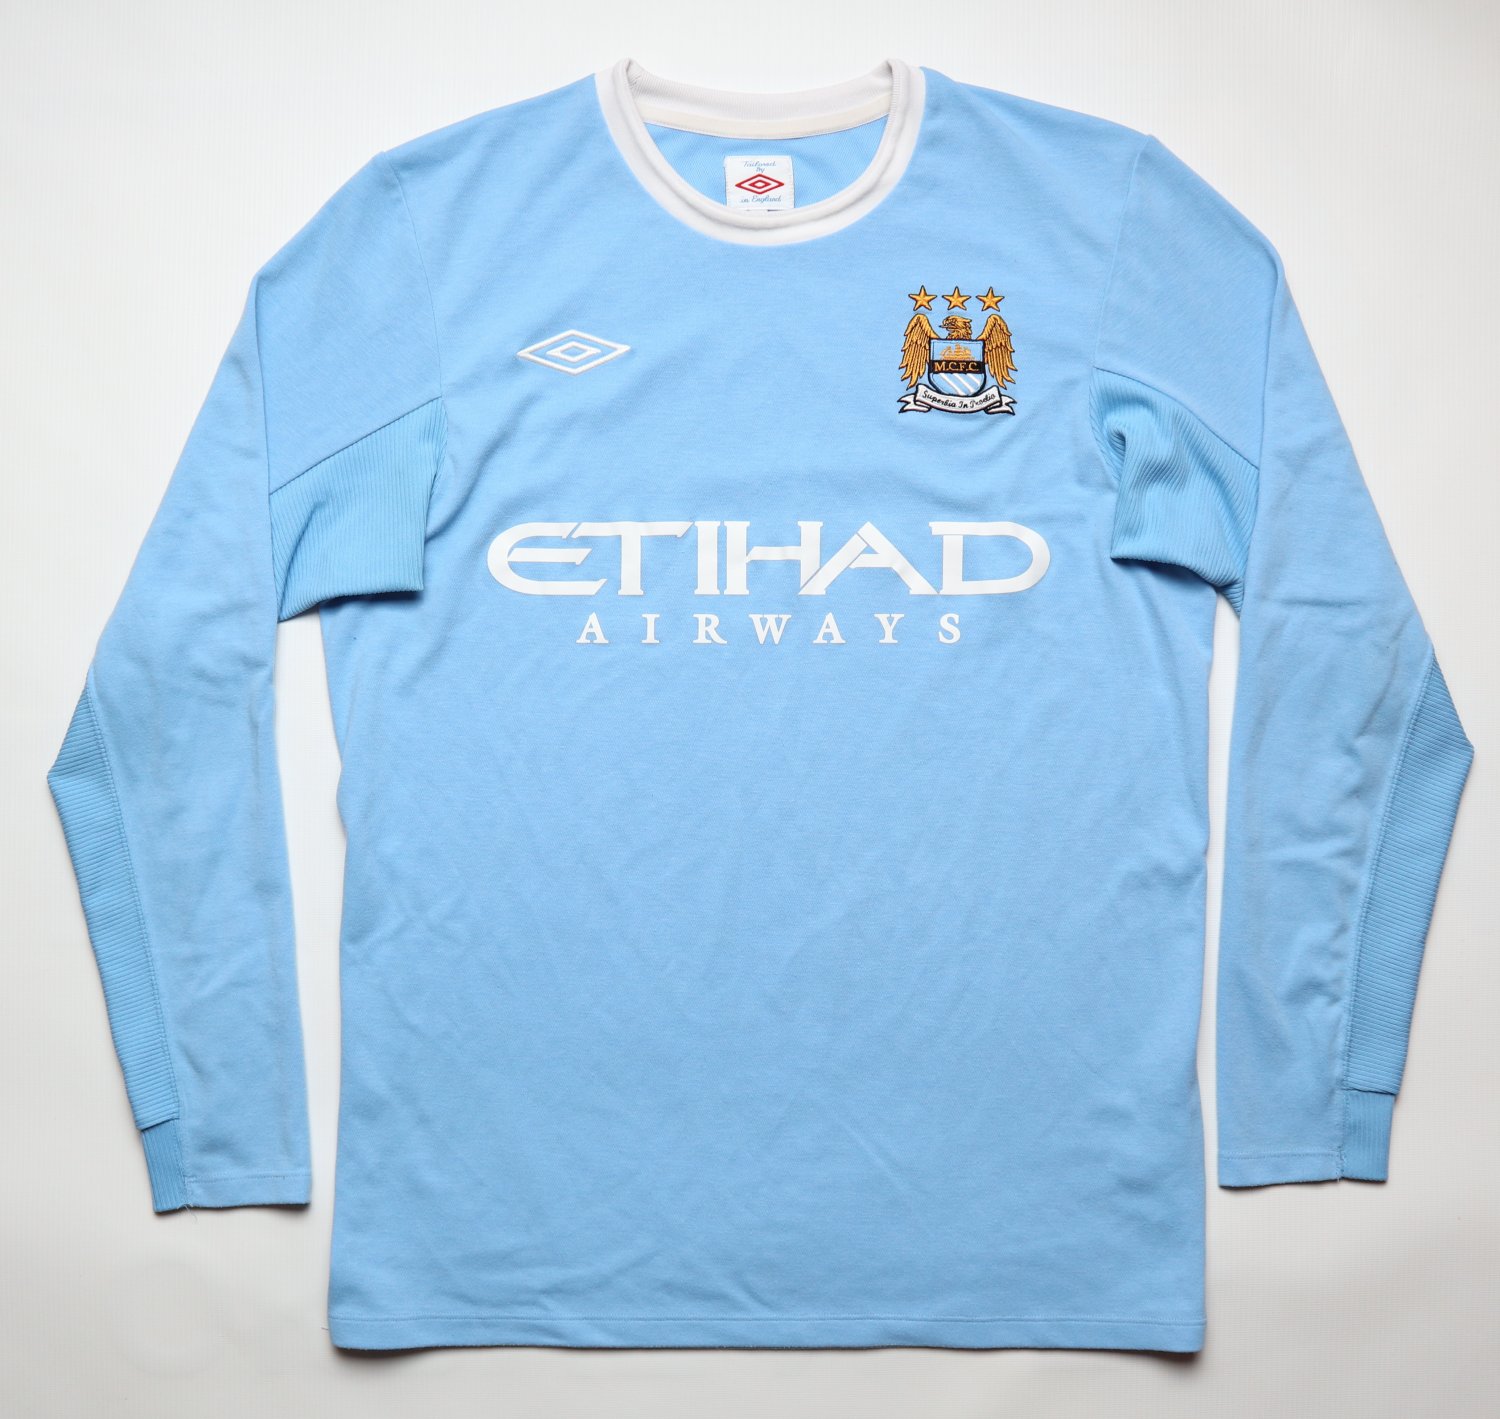 Manchester City Thuis voetbalshirt 2009 - 2010. Toegevoegd op 2014-10-28, 18:14